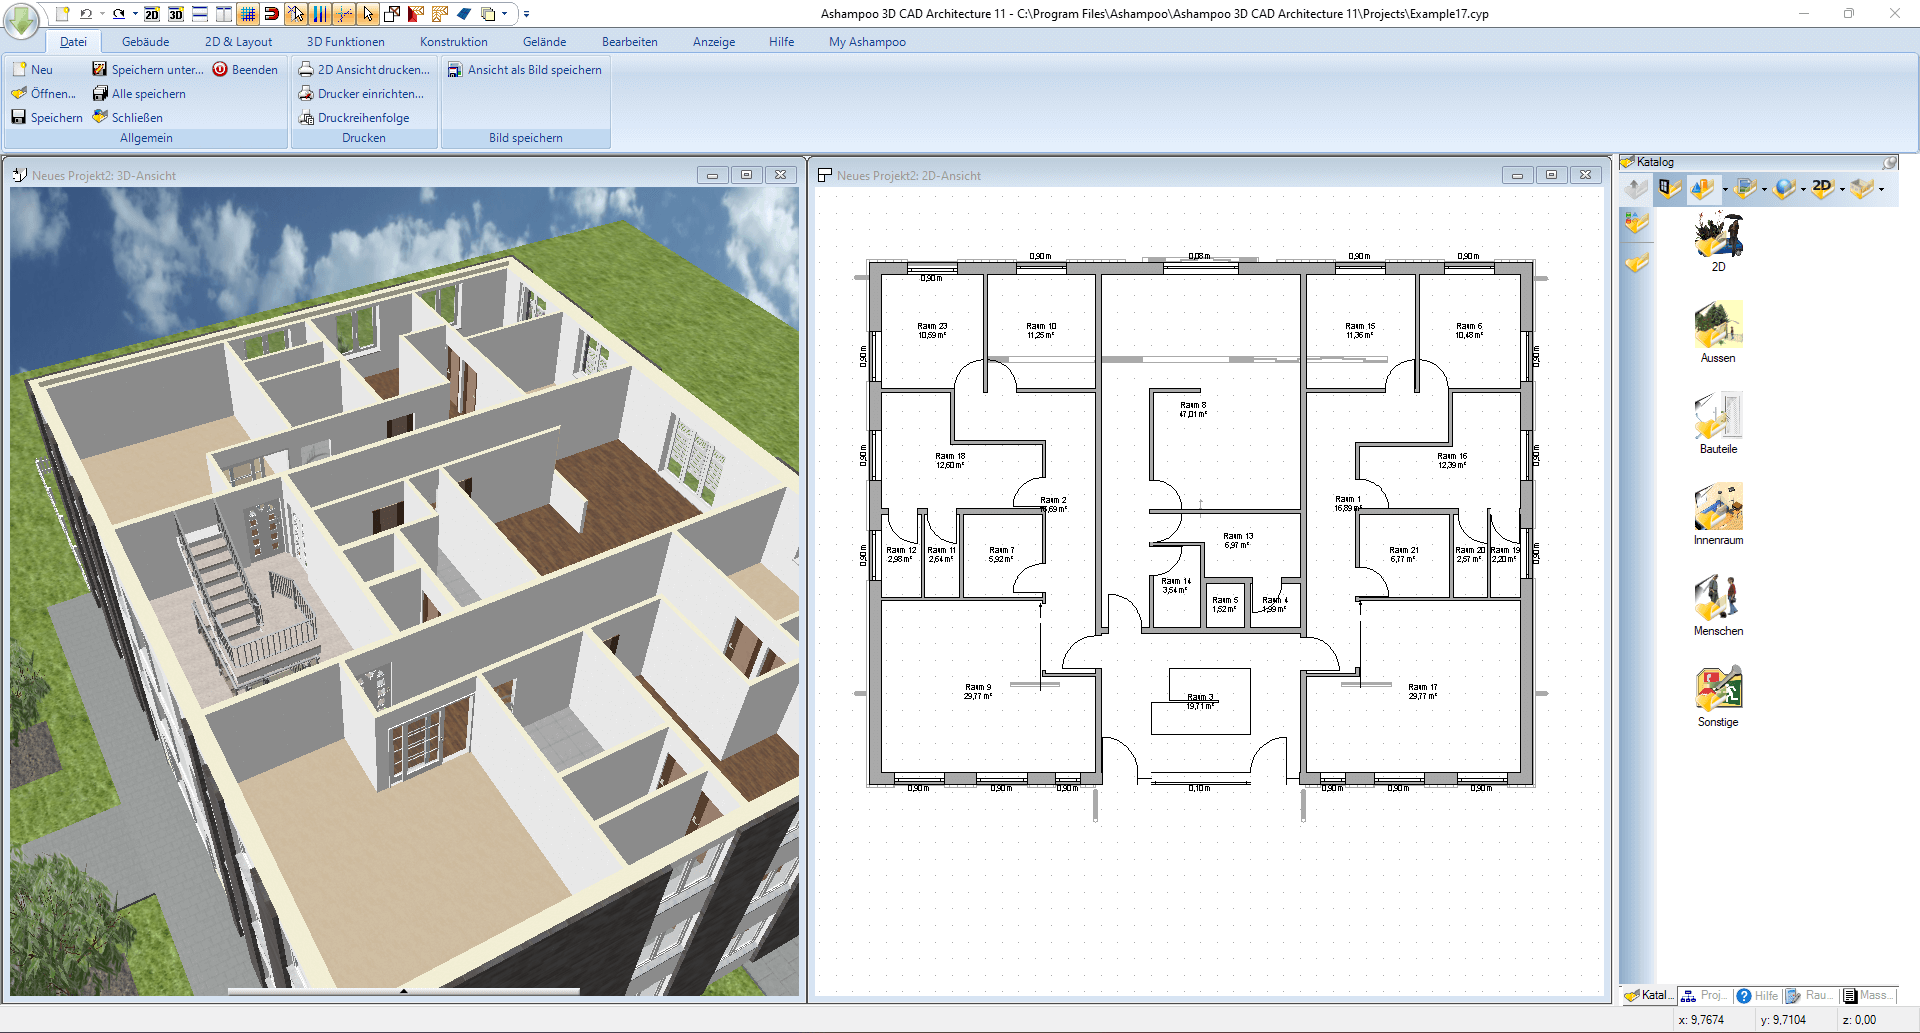 Ashampoo 3D CAD Architecture 11 - Skizze